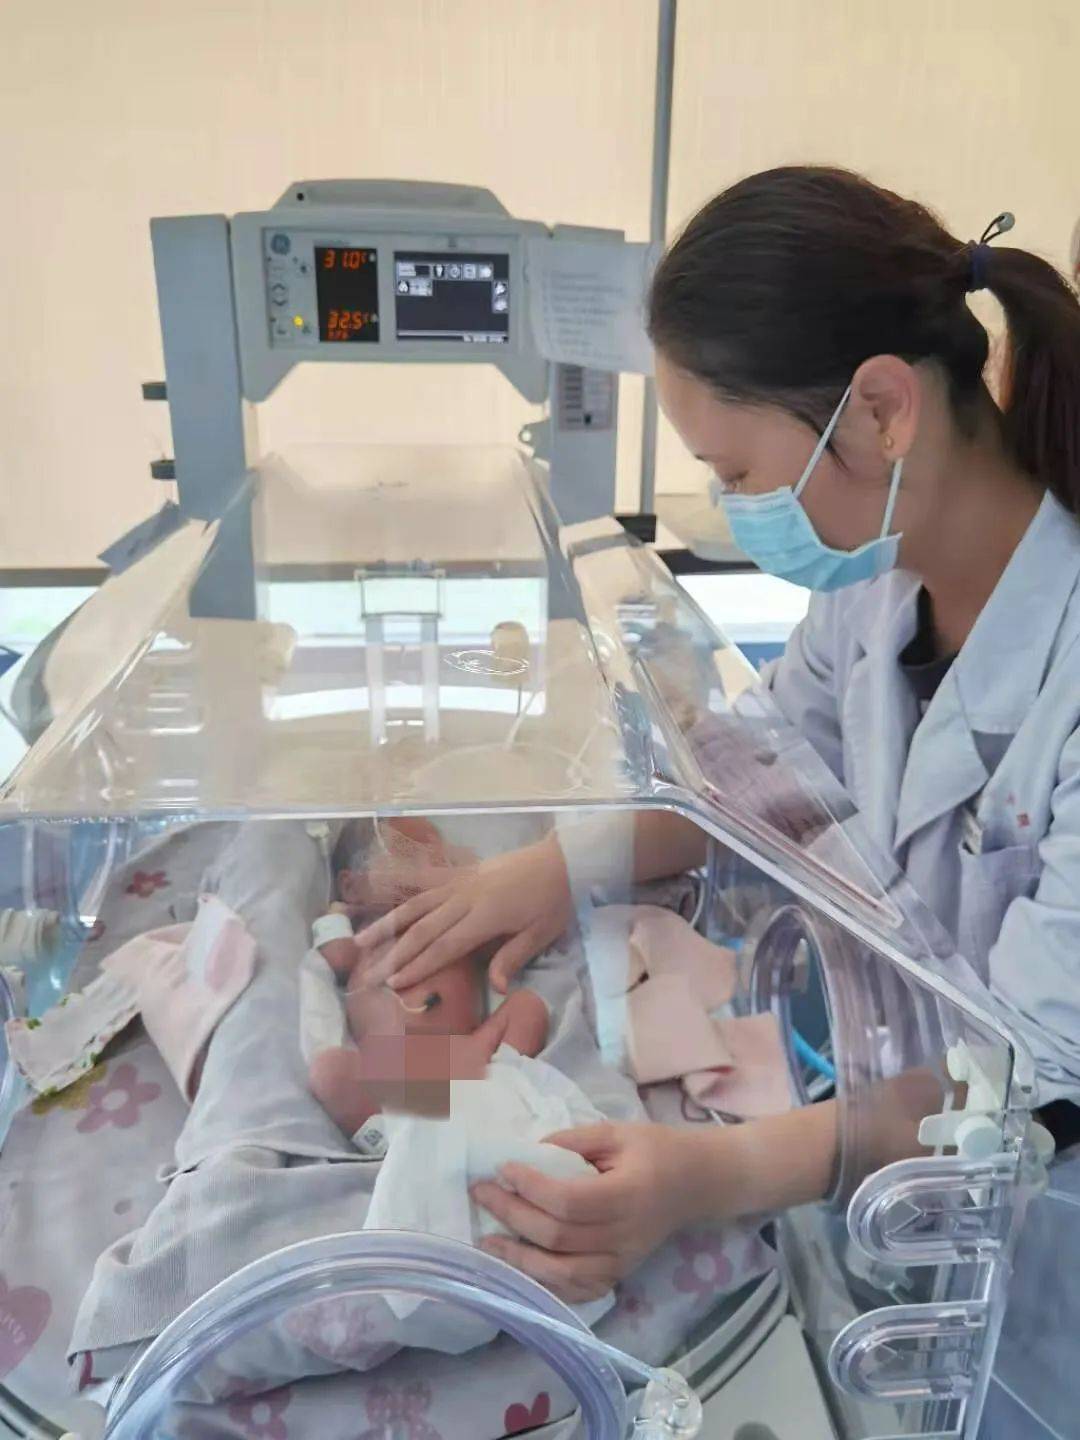 超声引导实时定位PICC导管尖端技术为早产患儿打通生命通道|PICC置管术|新生儿|超声|-健康界